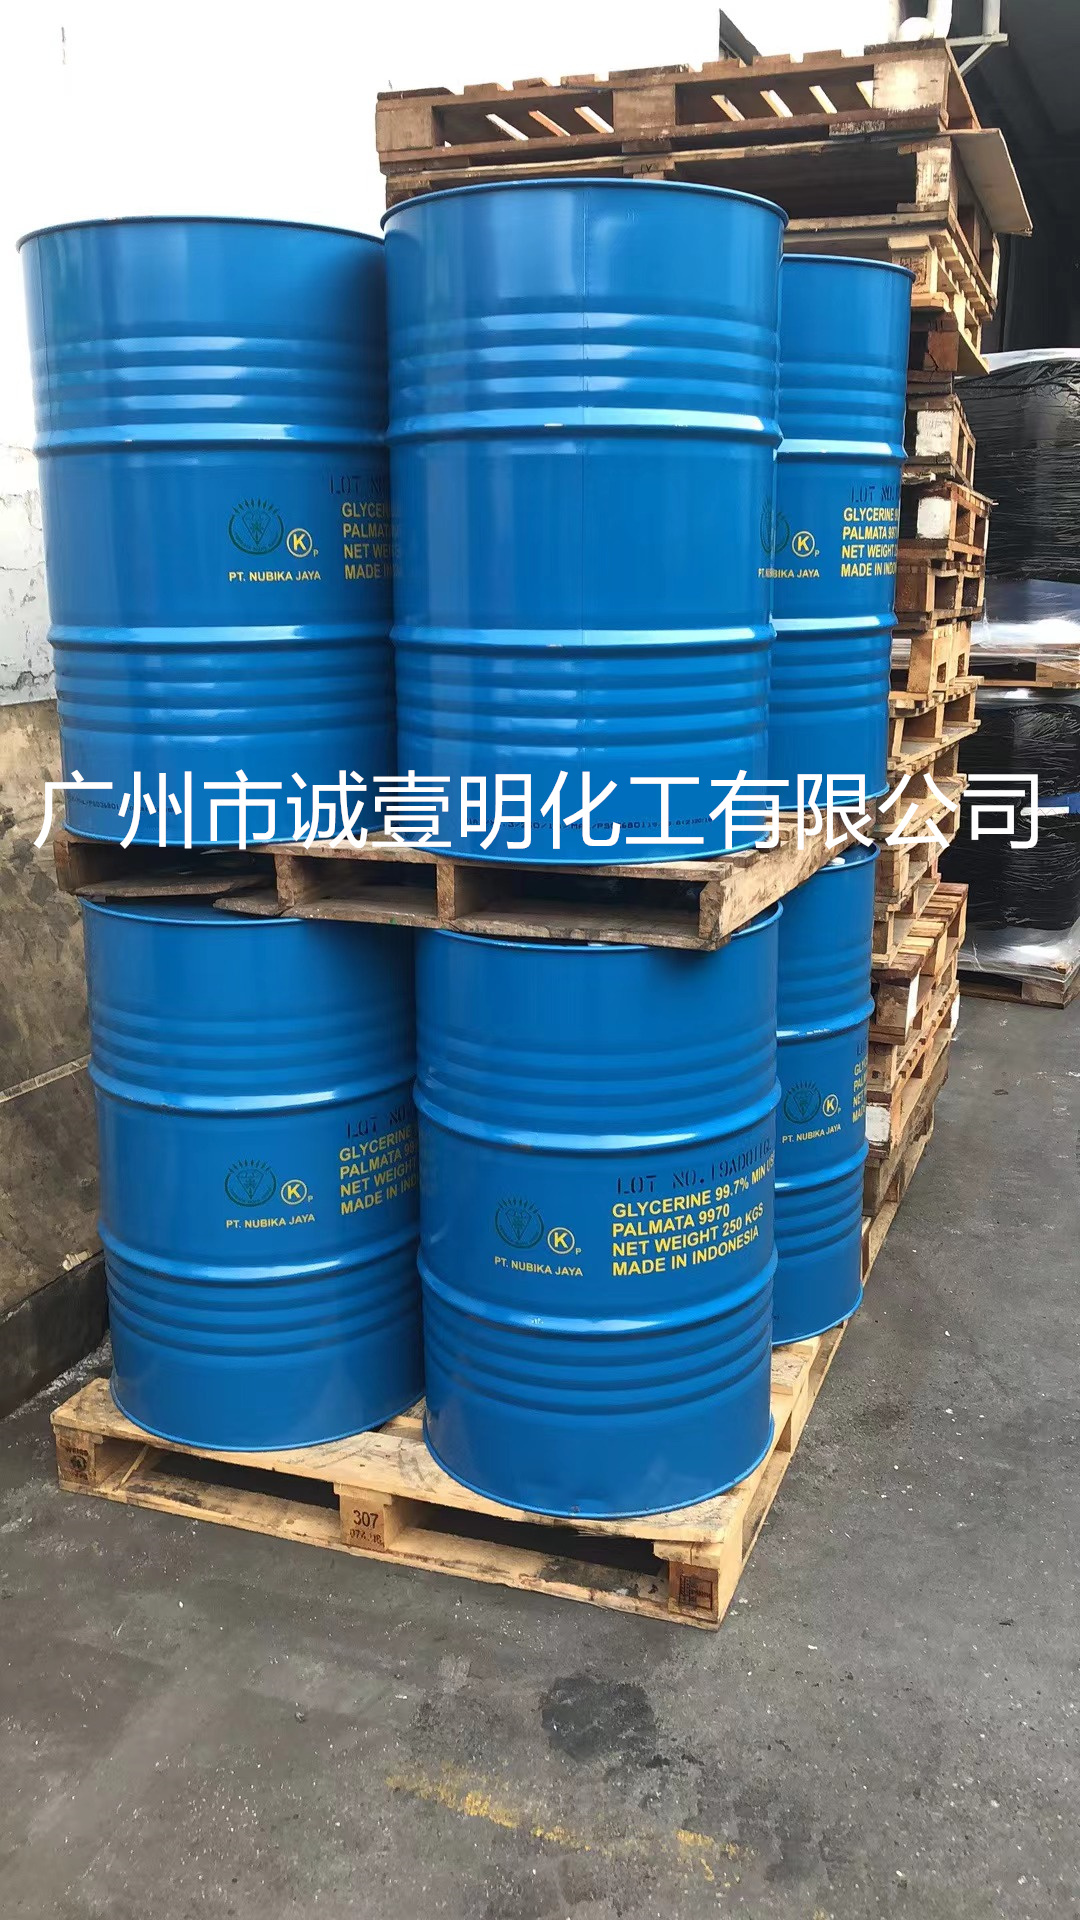 广州工业级绿宝植物甘油甜味剂